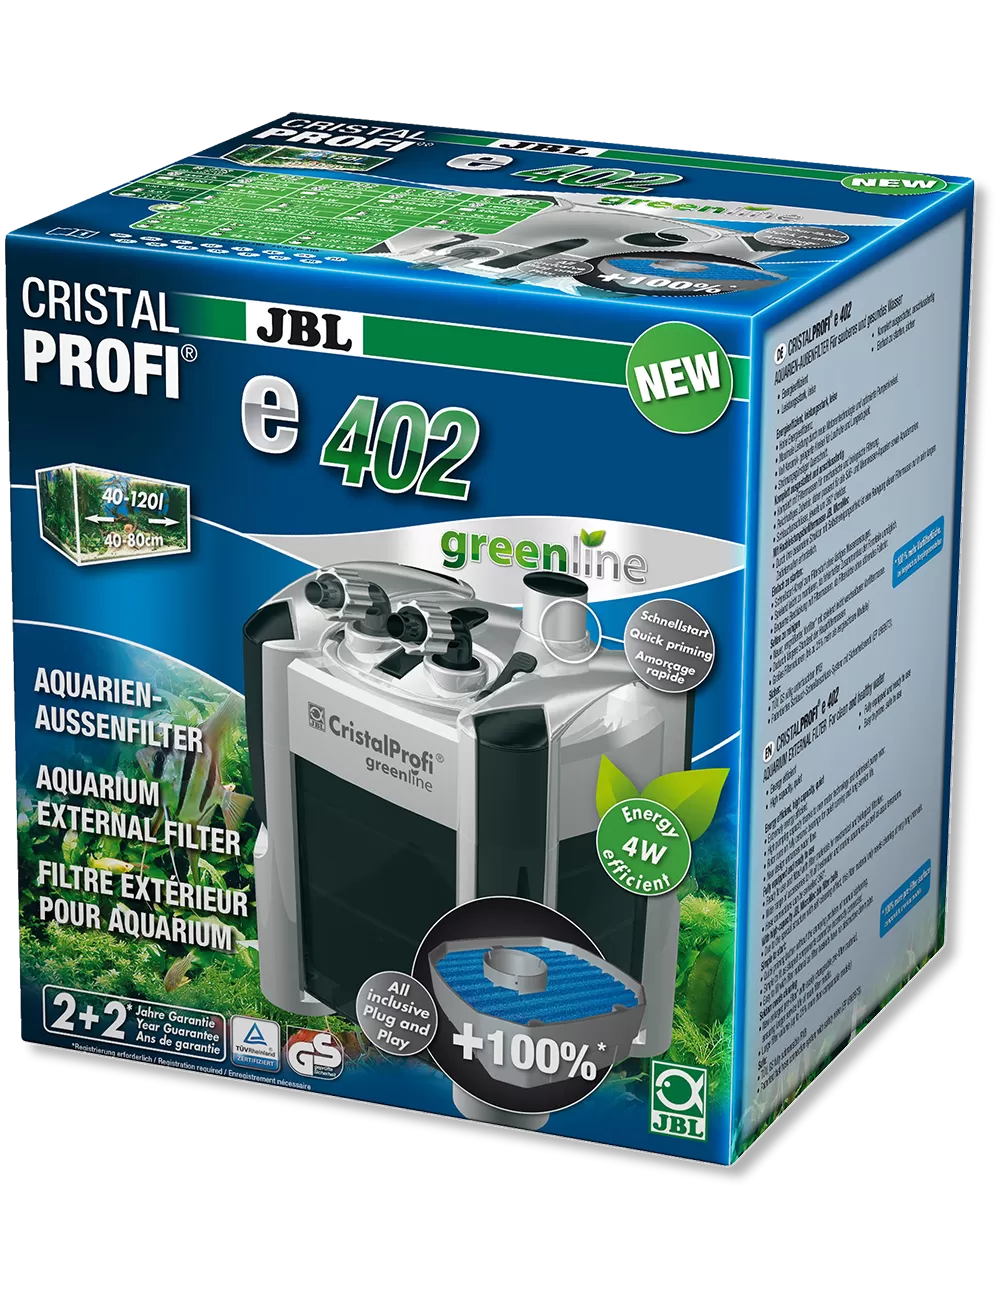 JBL - CristalProfi e402 greenline - Filtre externe - 40 à 120 L